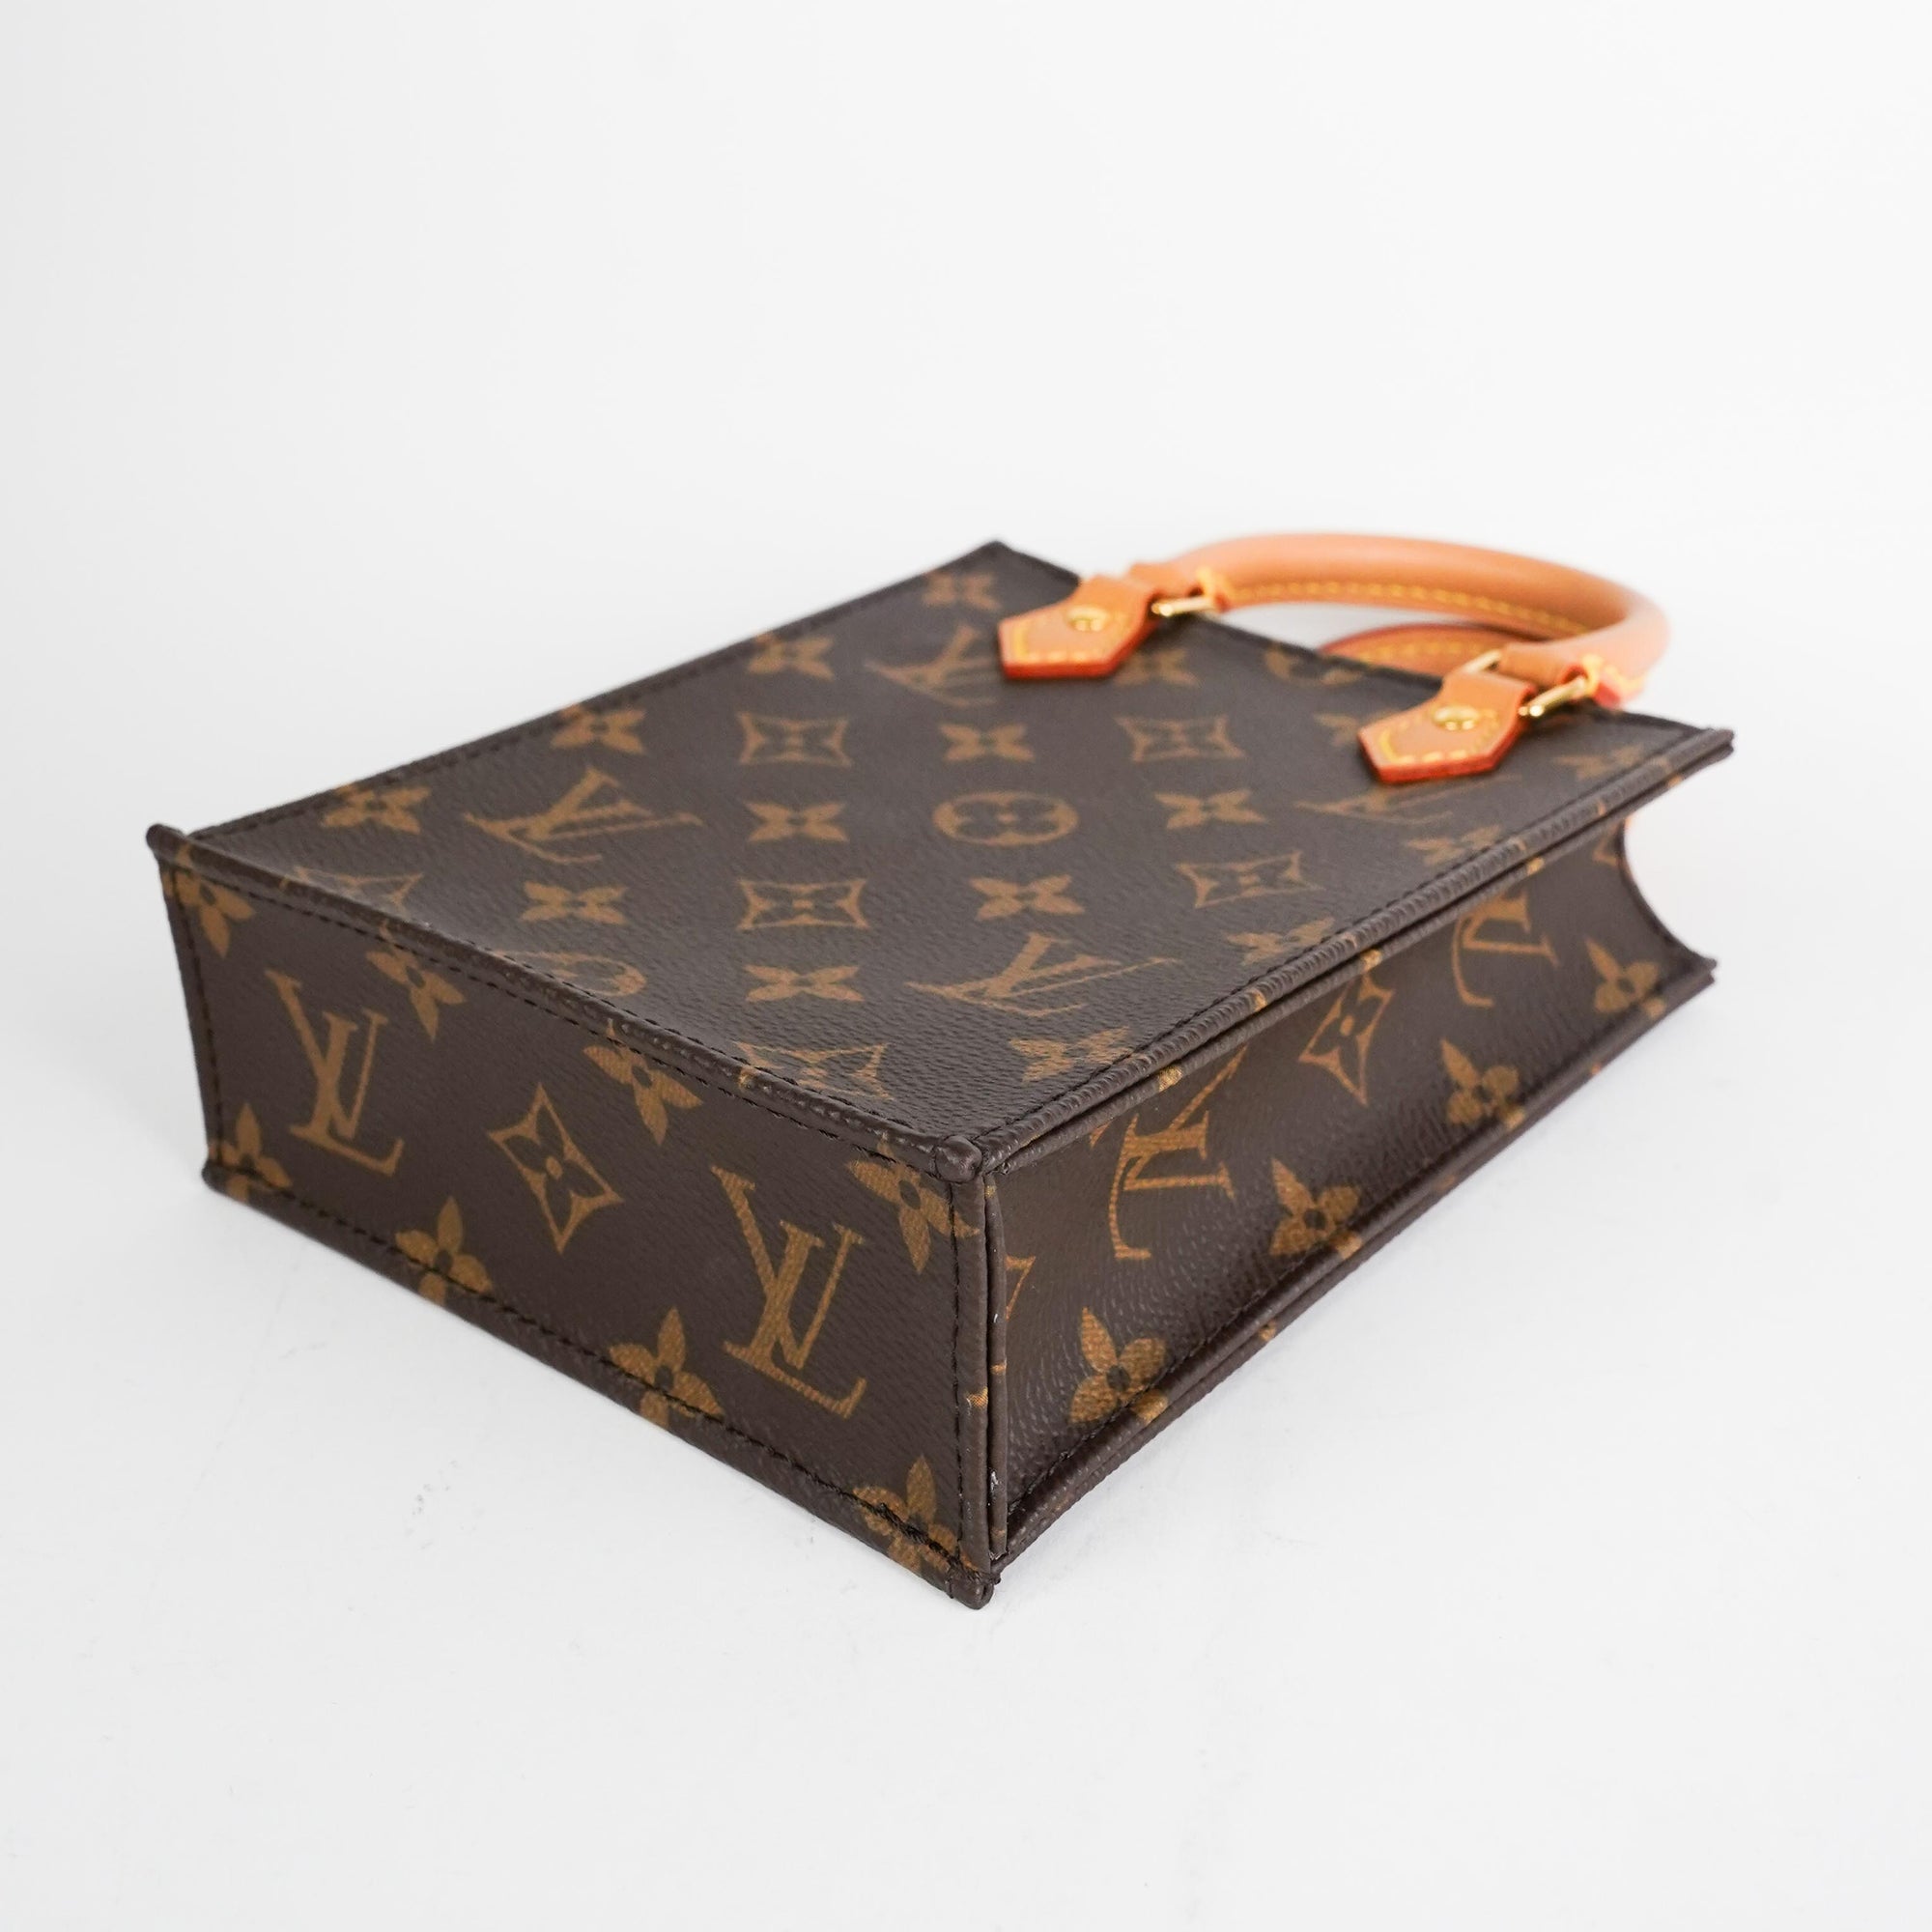 Something About That “Flat” Bag – Louis Vuitton Sac Plat - Lake Diary